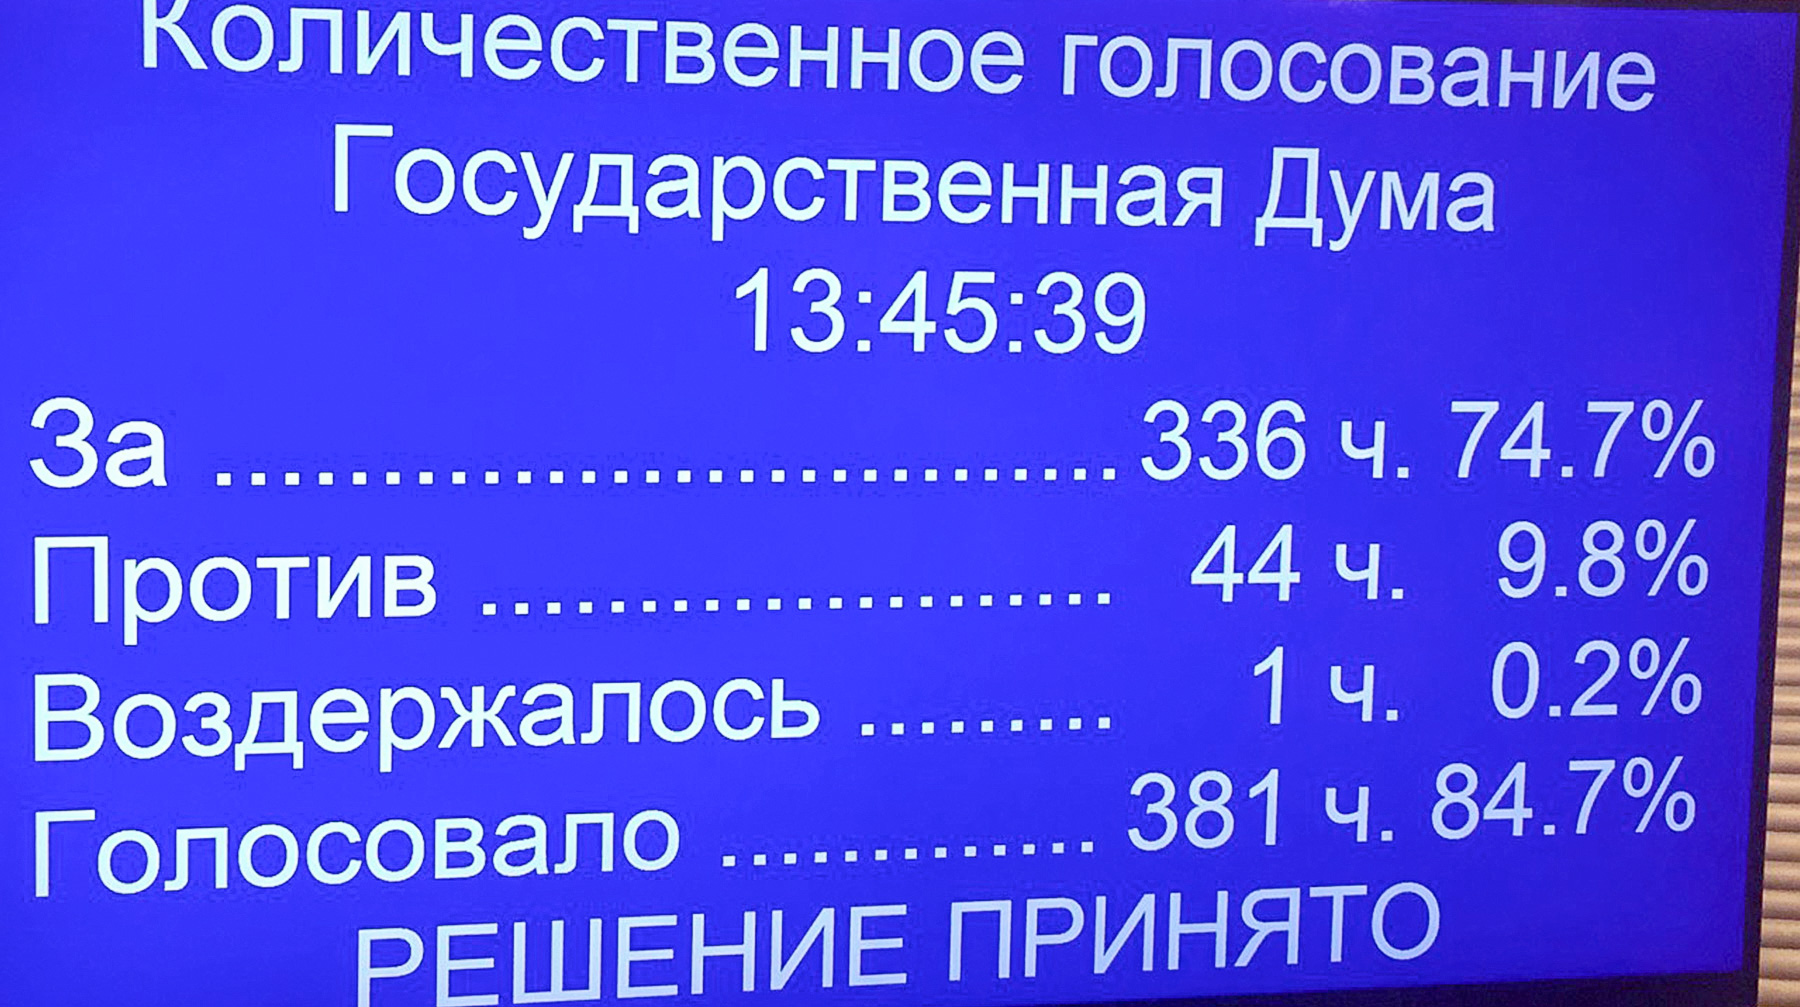 В ходе голосования спикер Госдумы просил депутатов голосовать только за себя Итоги голосования в Госдуме по законопроектам Клишаса